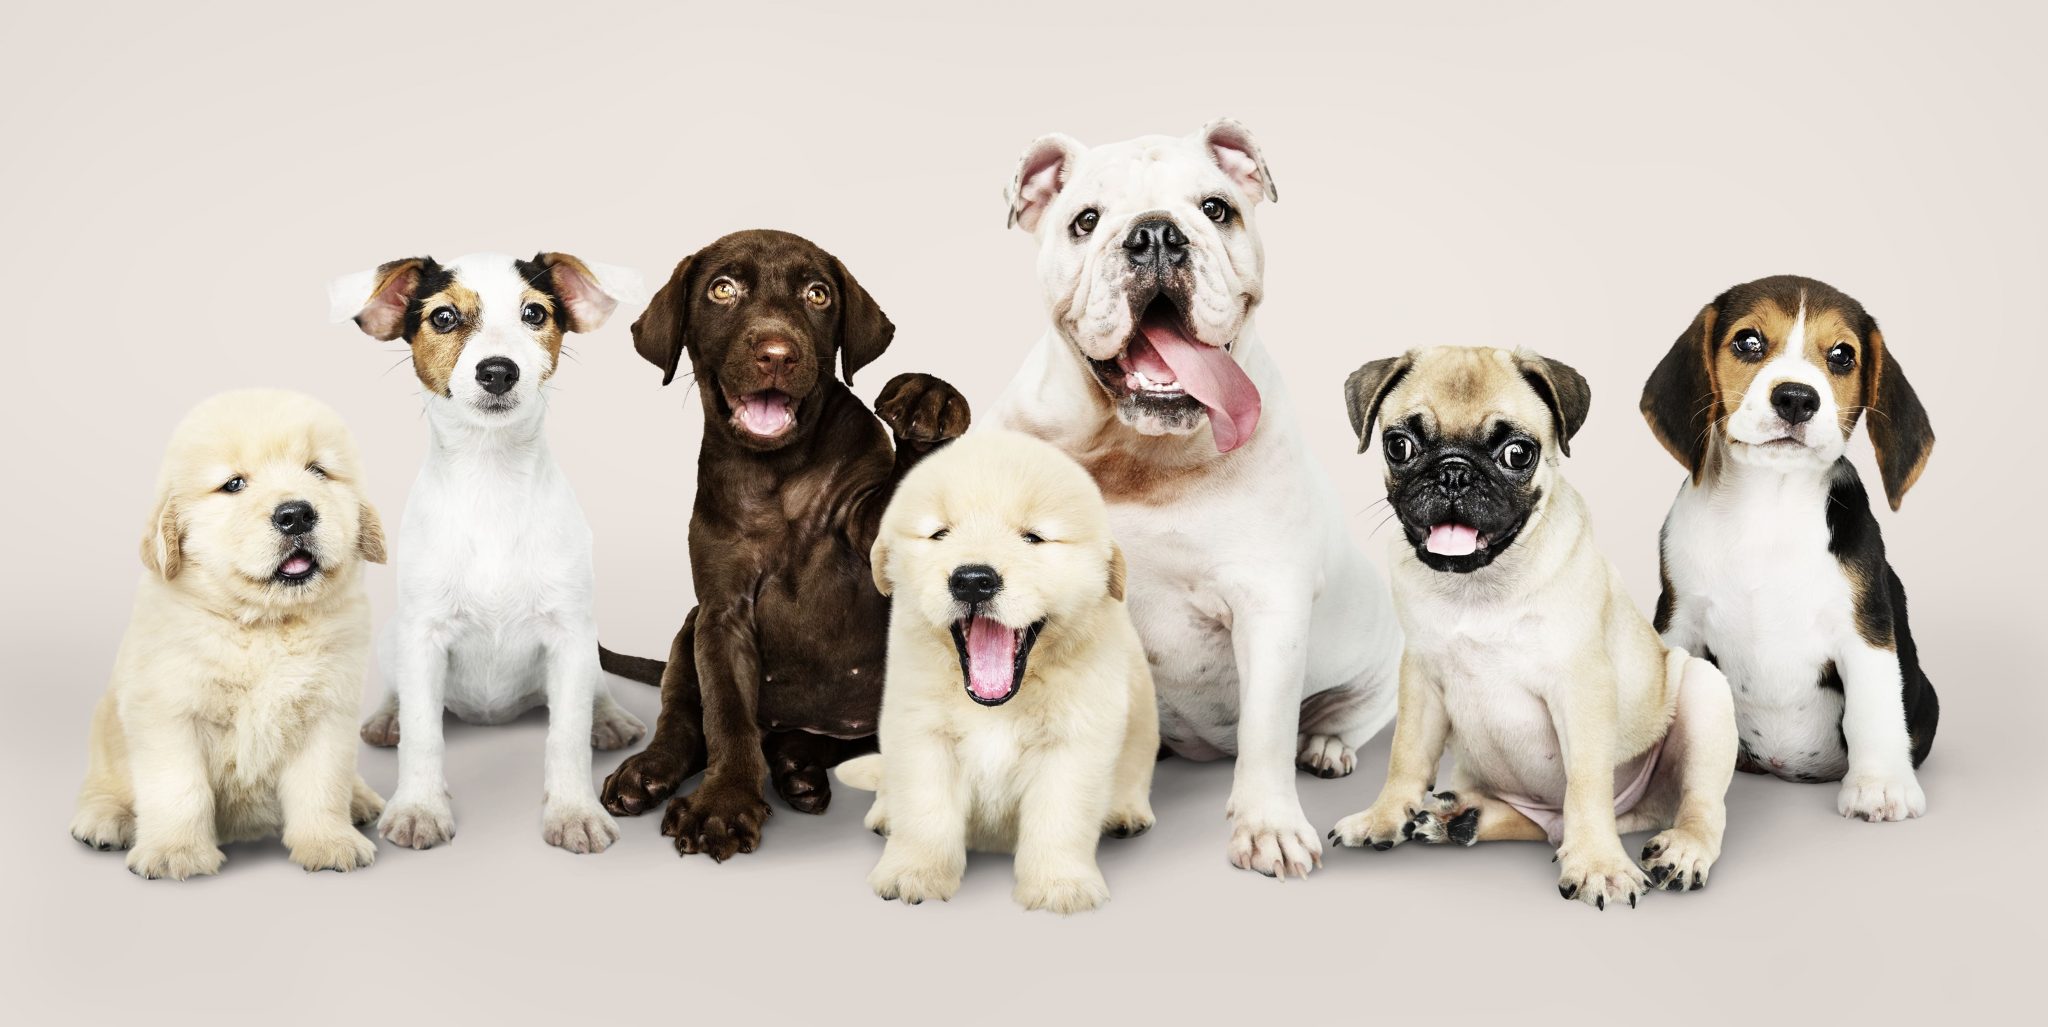 Cuidados com cães: lista dos cuidados essenciais que todo cão precisa